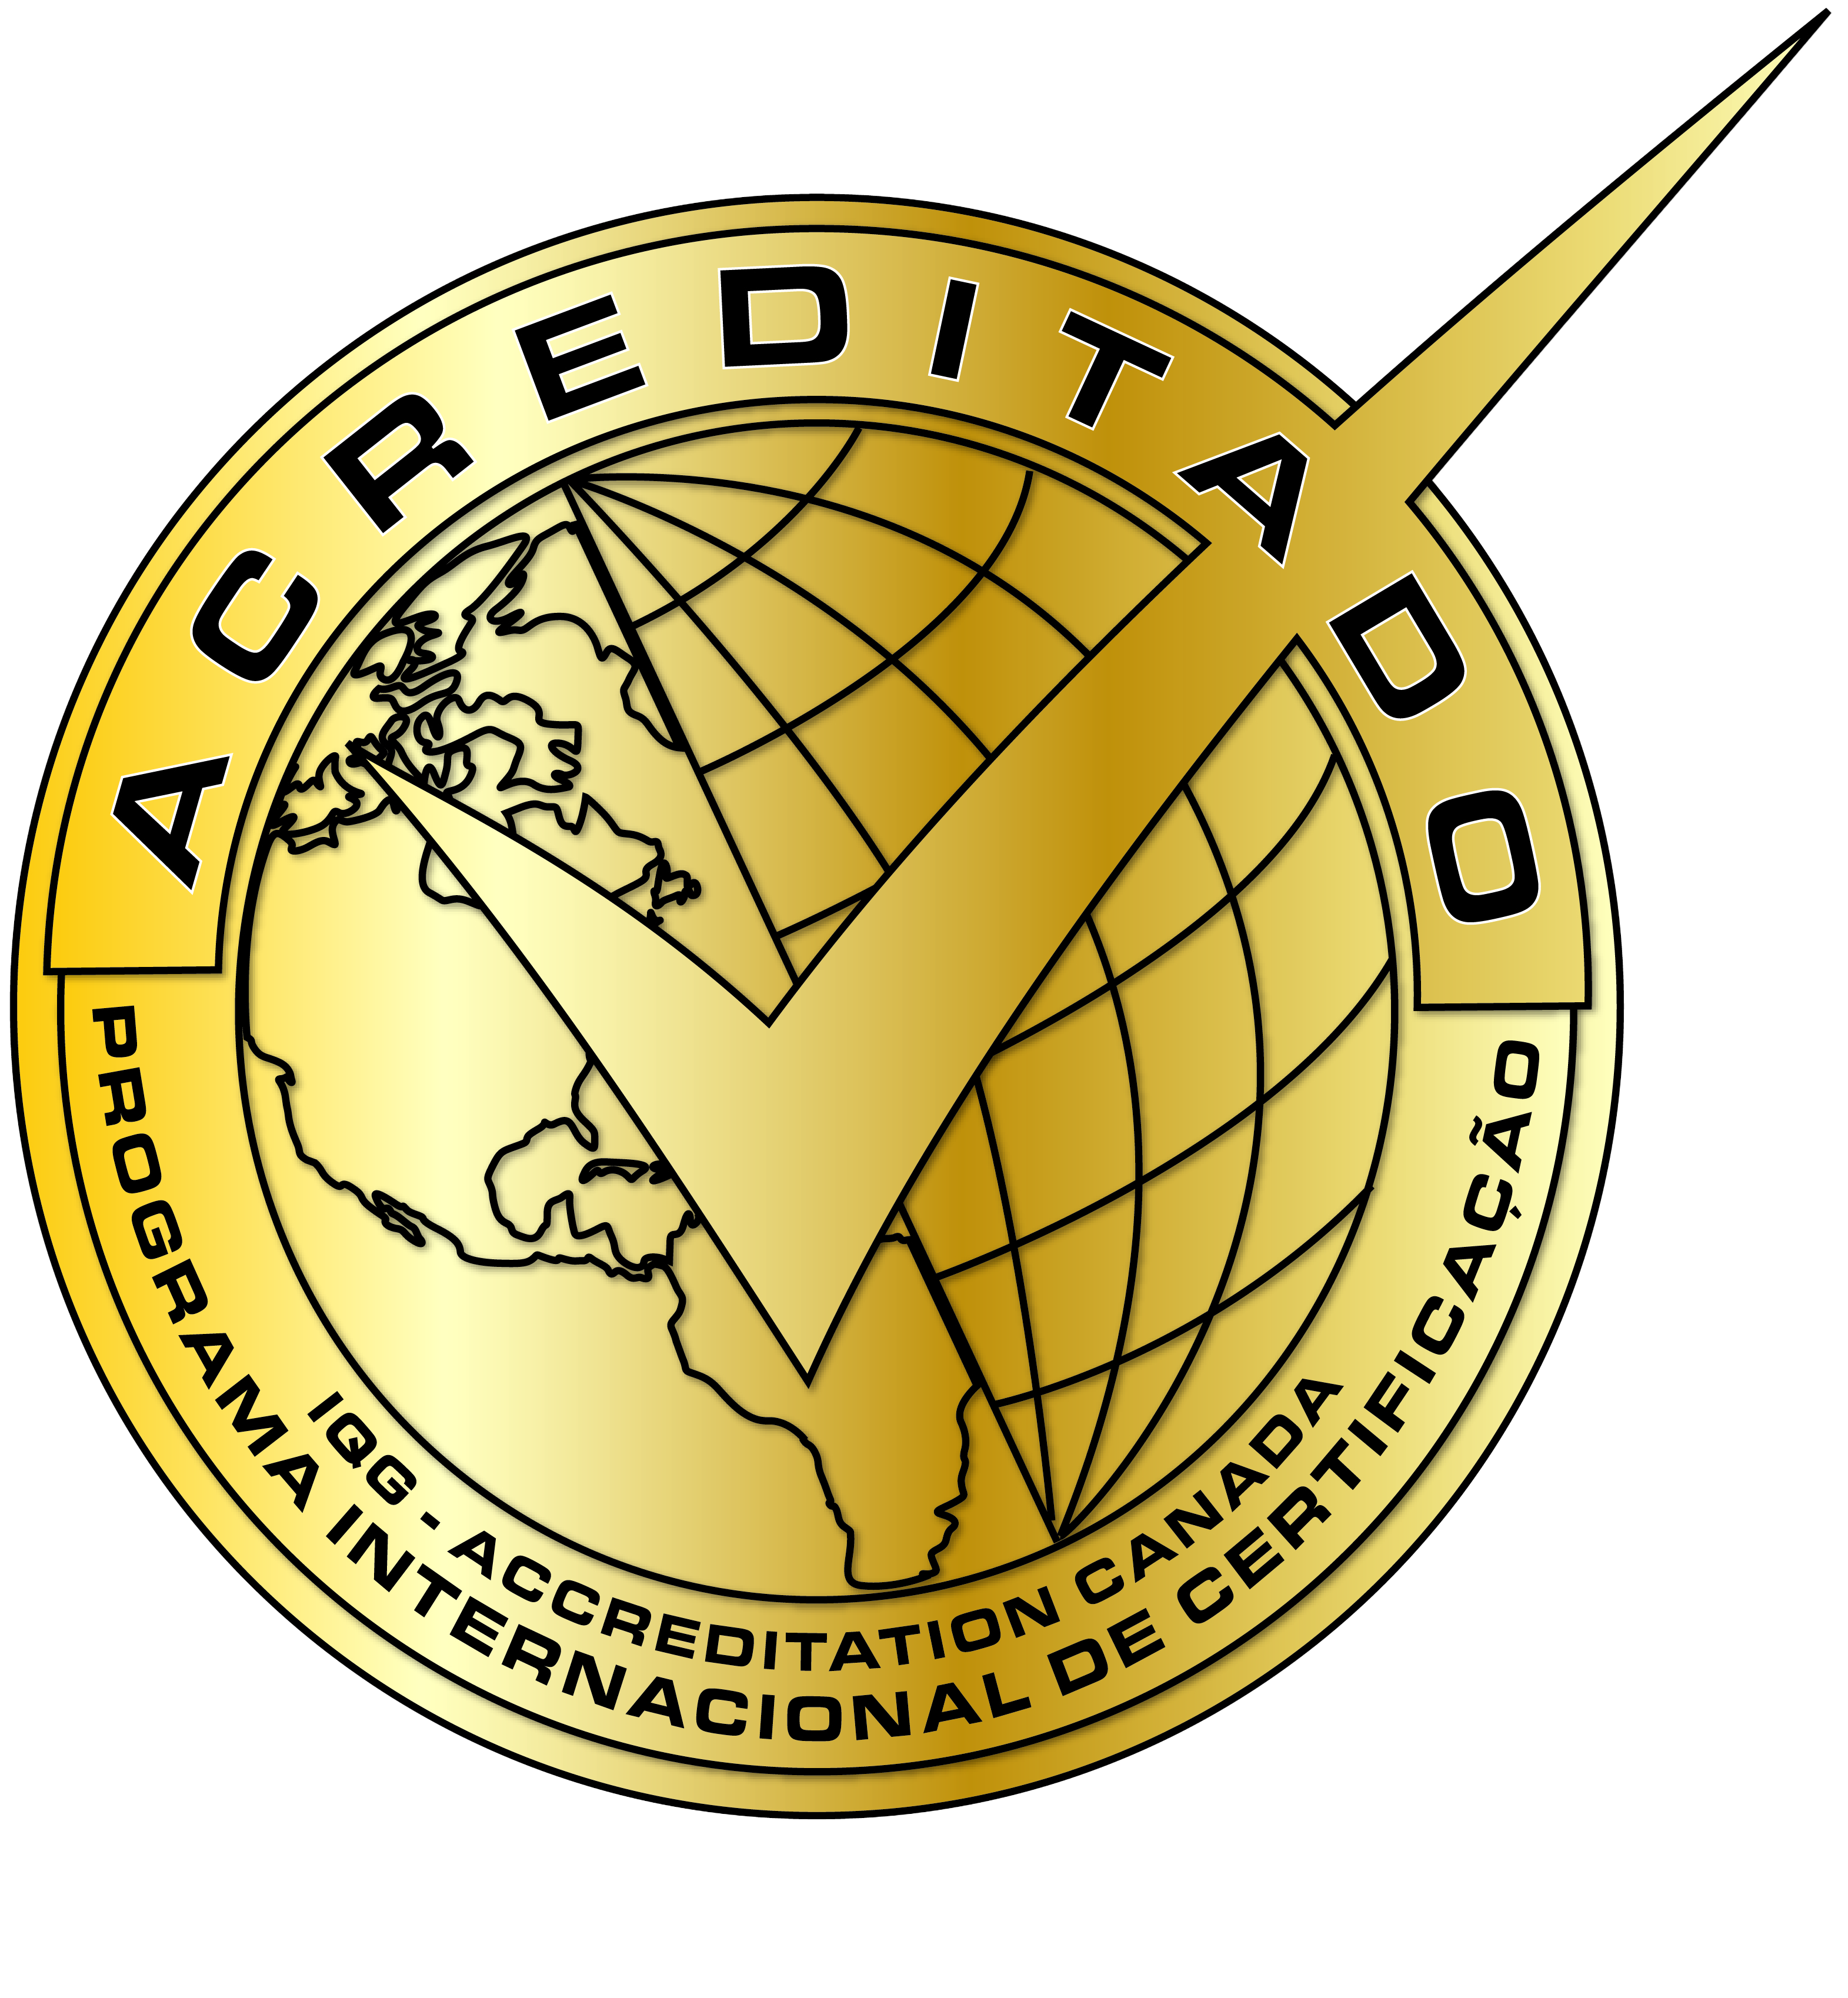 Selo ACREDITADO - Programa Internacional de Certificação